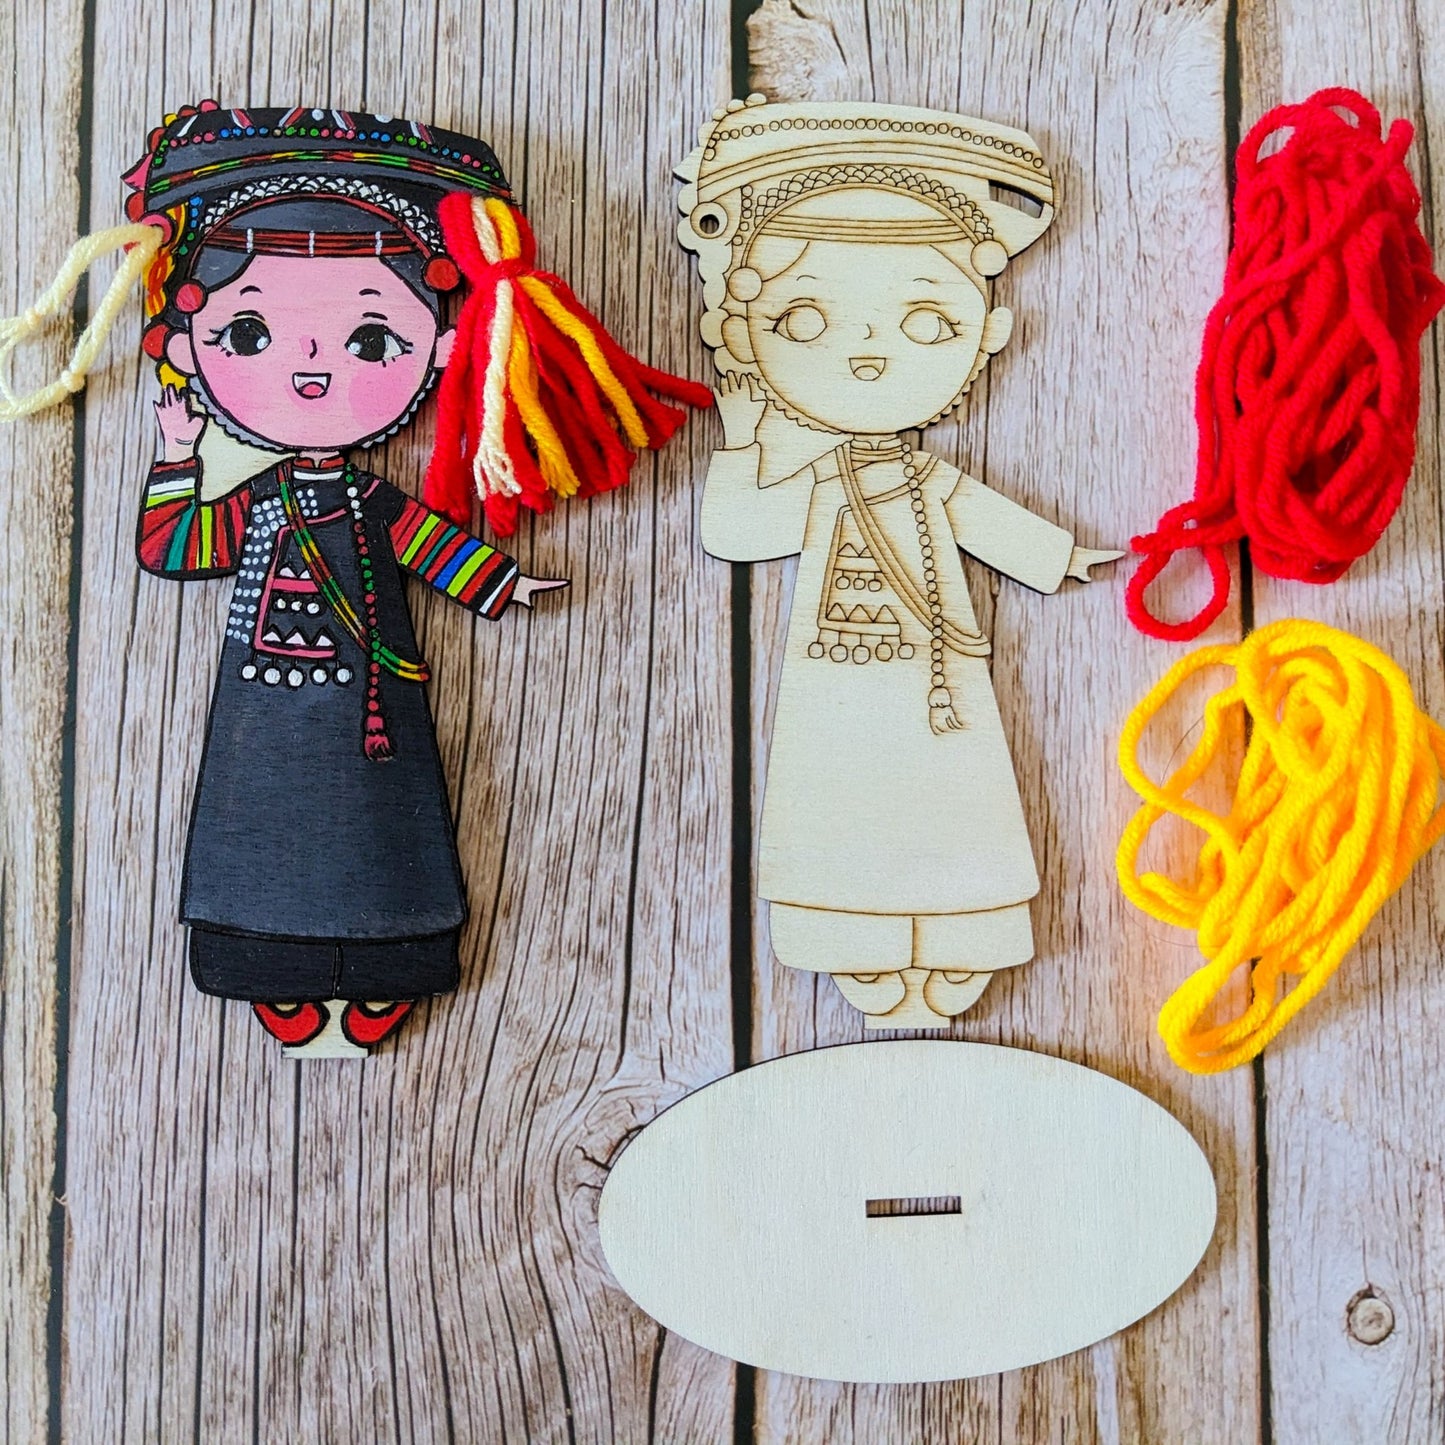 BỘ TRANG TRÍ BÚP BÊ TỪ GỖ | Ethnic Wooden Dolls Decoration Kit